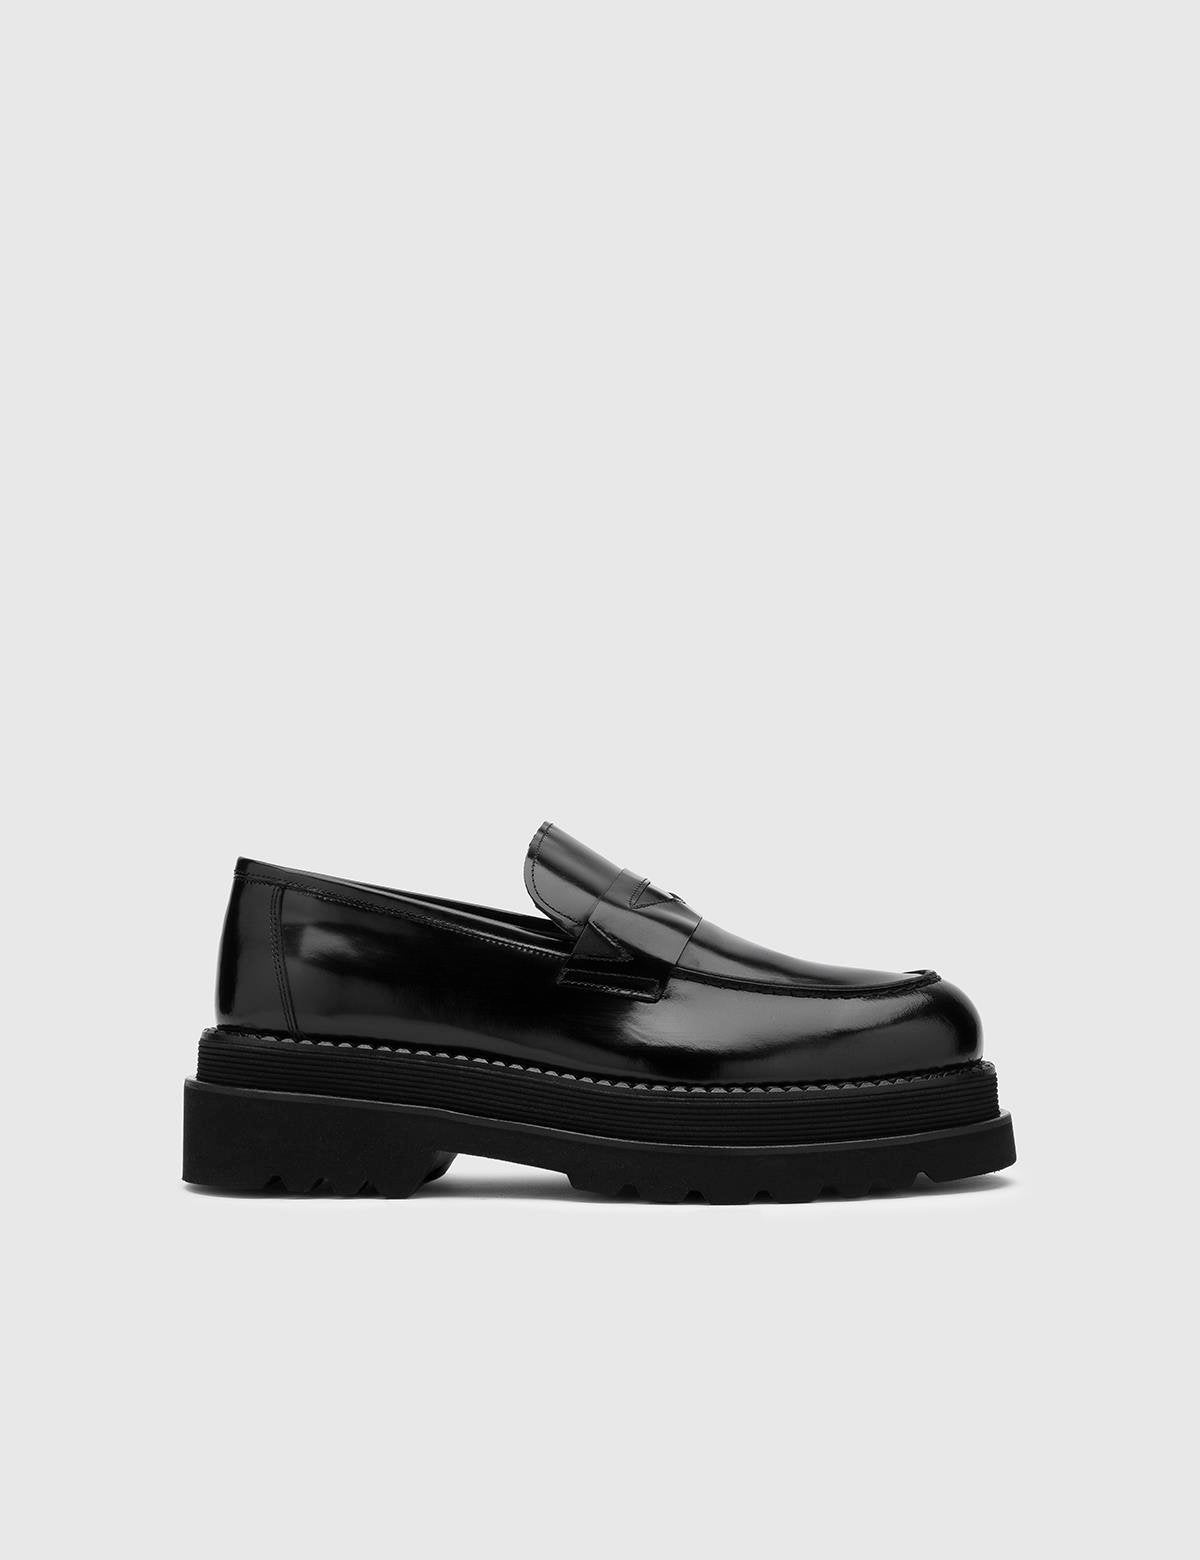 Arve Black Florentic Leather Men's Loafer